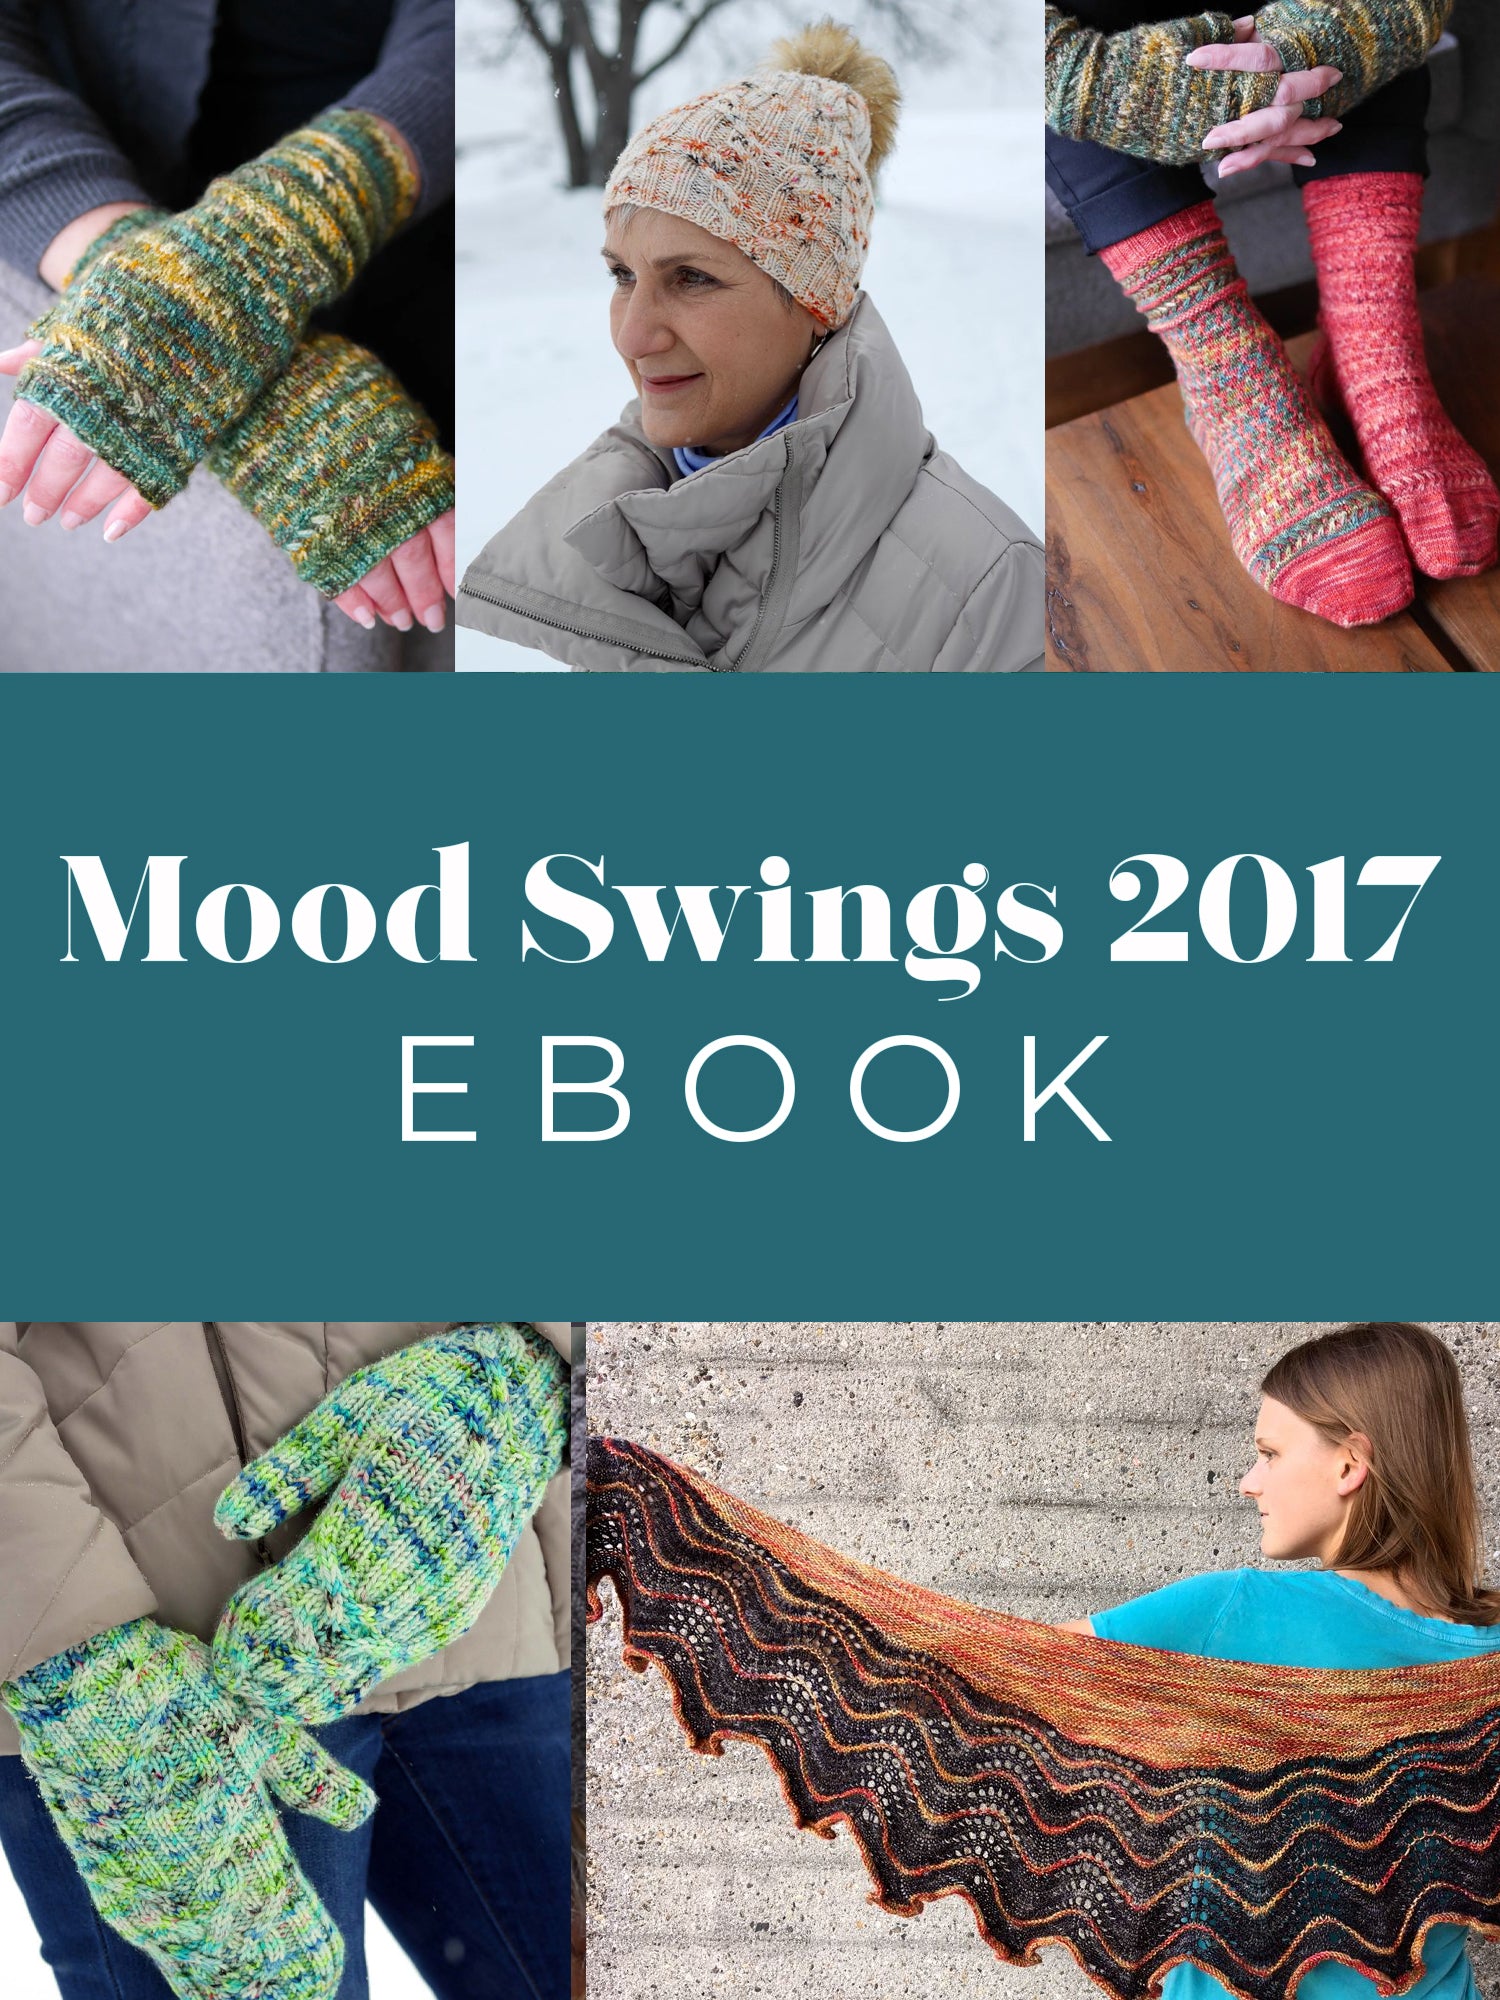 Mood Swings 2017 ebook